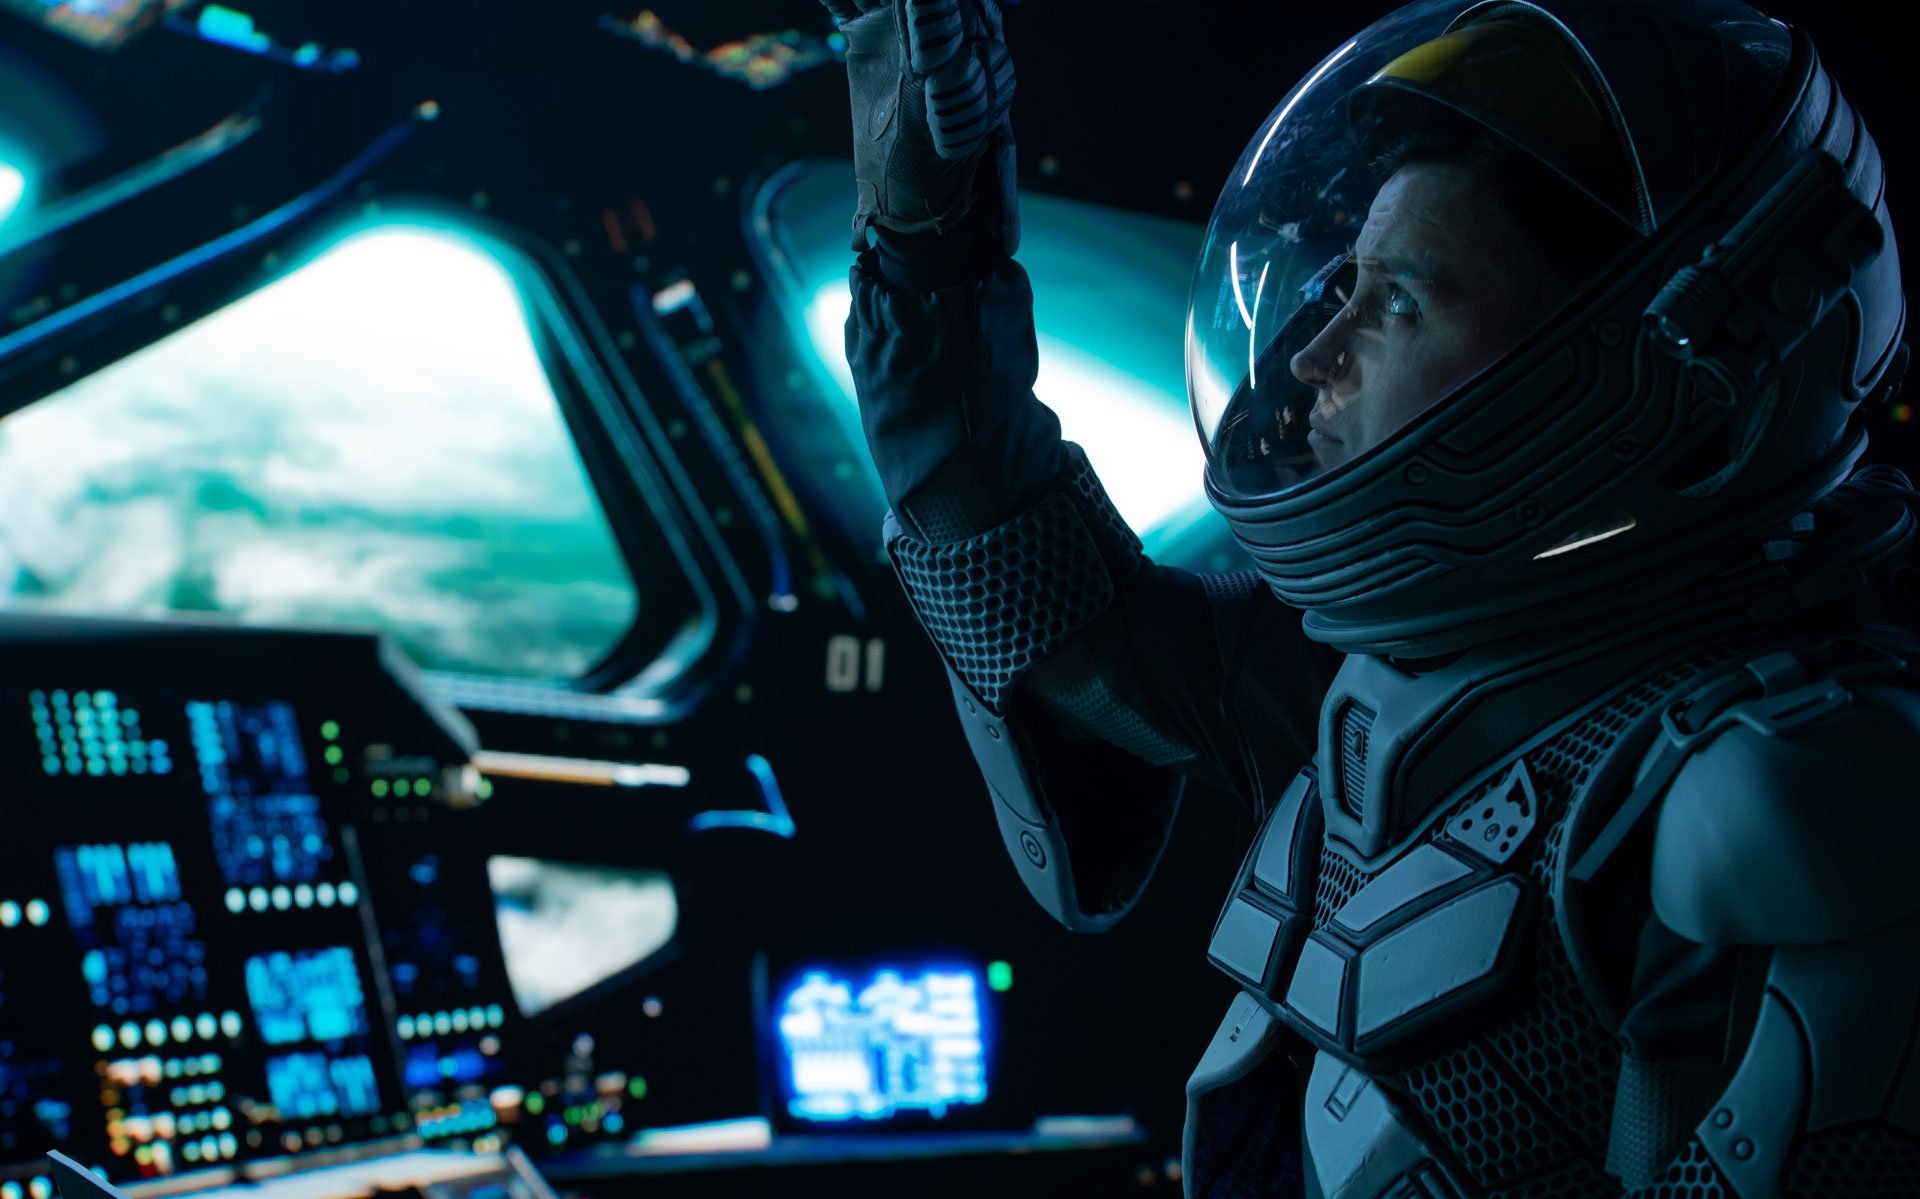 Zu sehen ist ein Astronaut, der im Cockpit einer Rakete sitzt und nach oben an einen Schalter greift. Man sieht außerdem verschiedene Displays, im Hintergrund ist durch die Fenster des Raumschiffs die Erde schemenhaft zu erkennen.